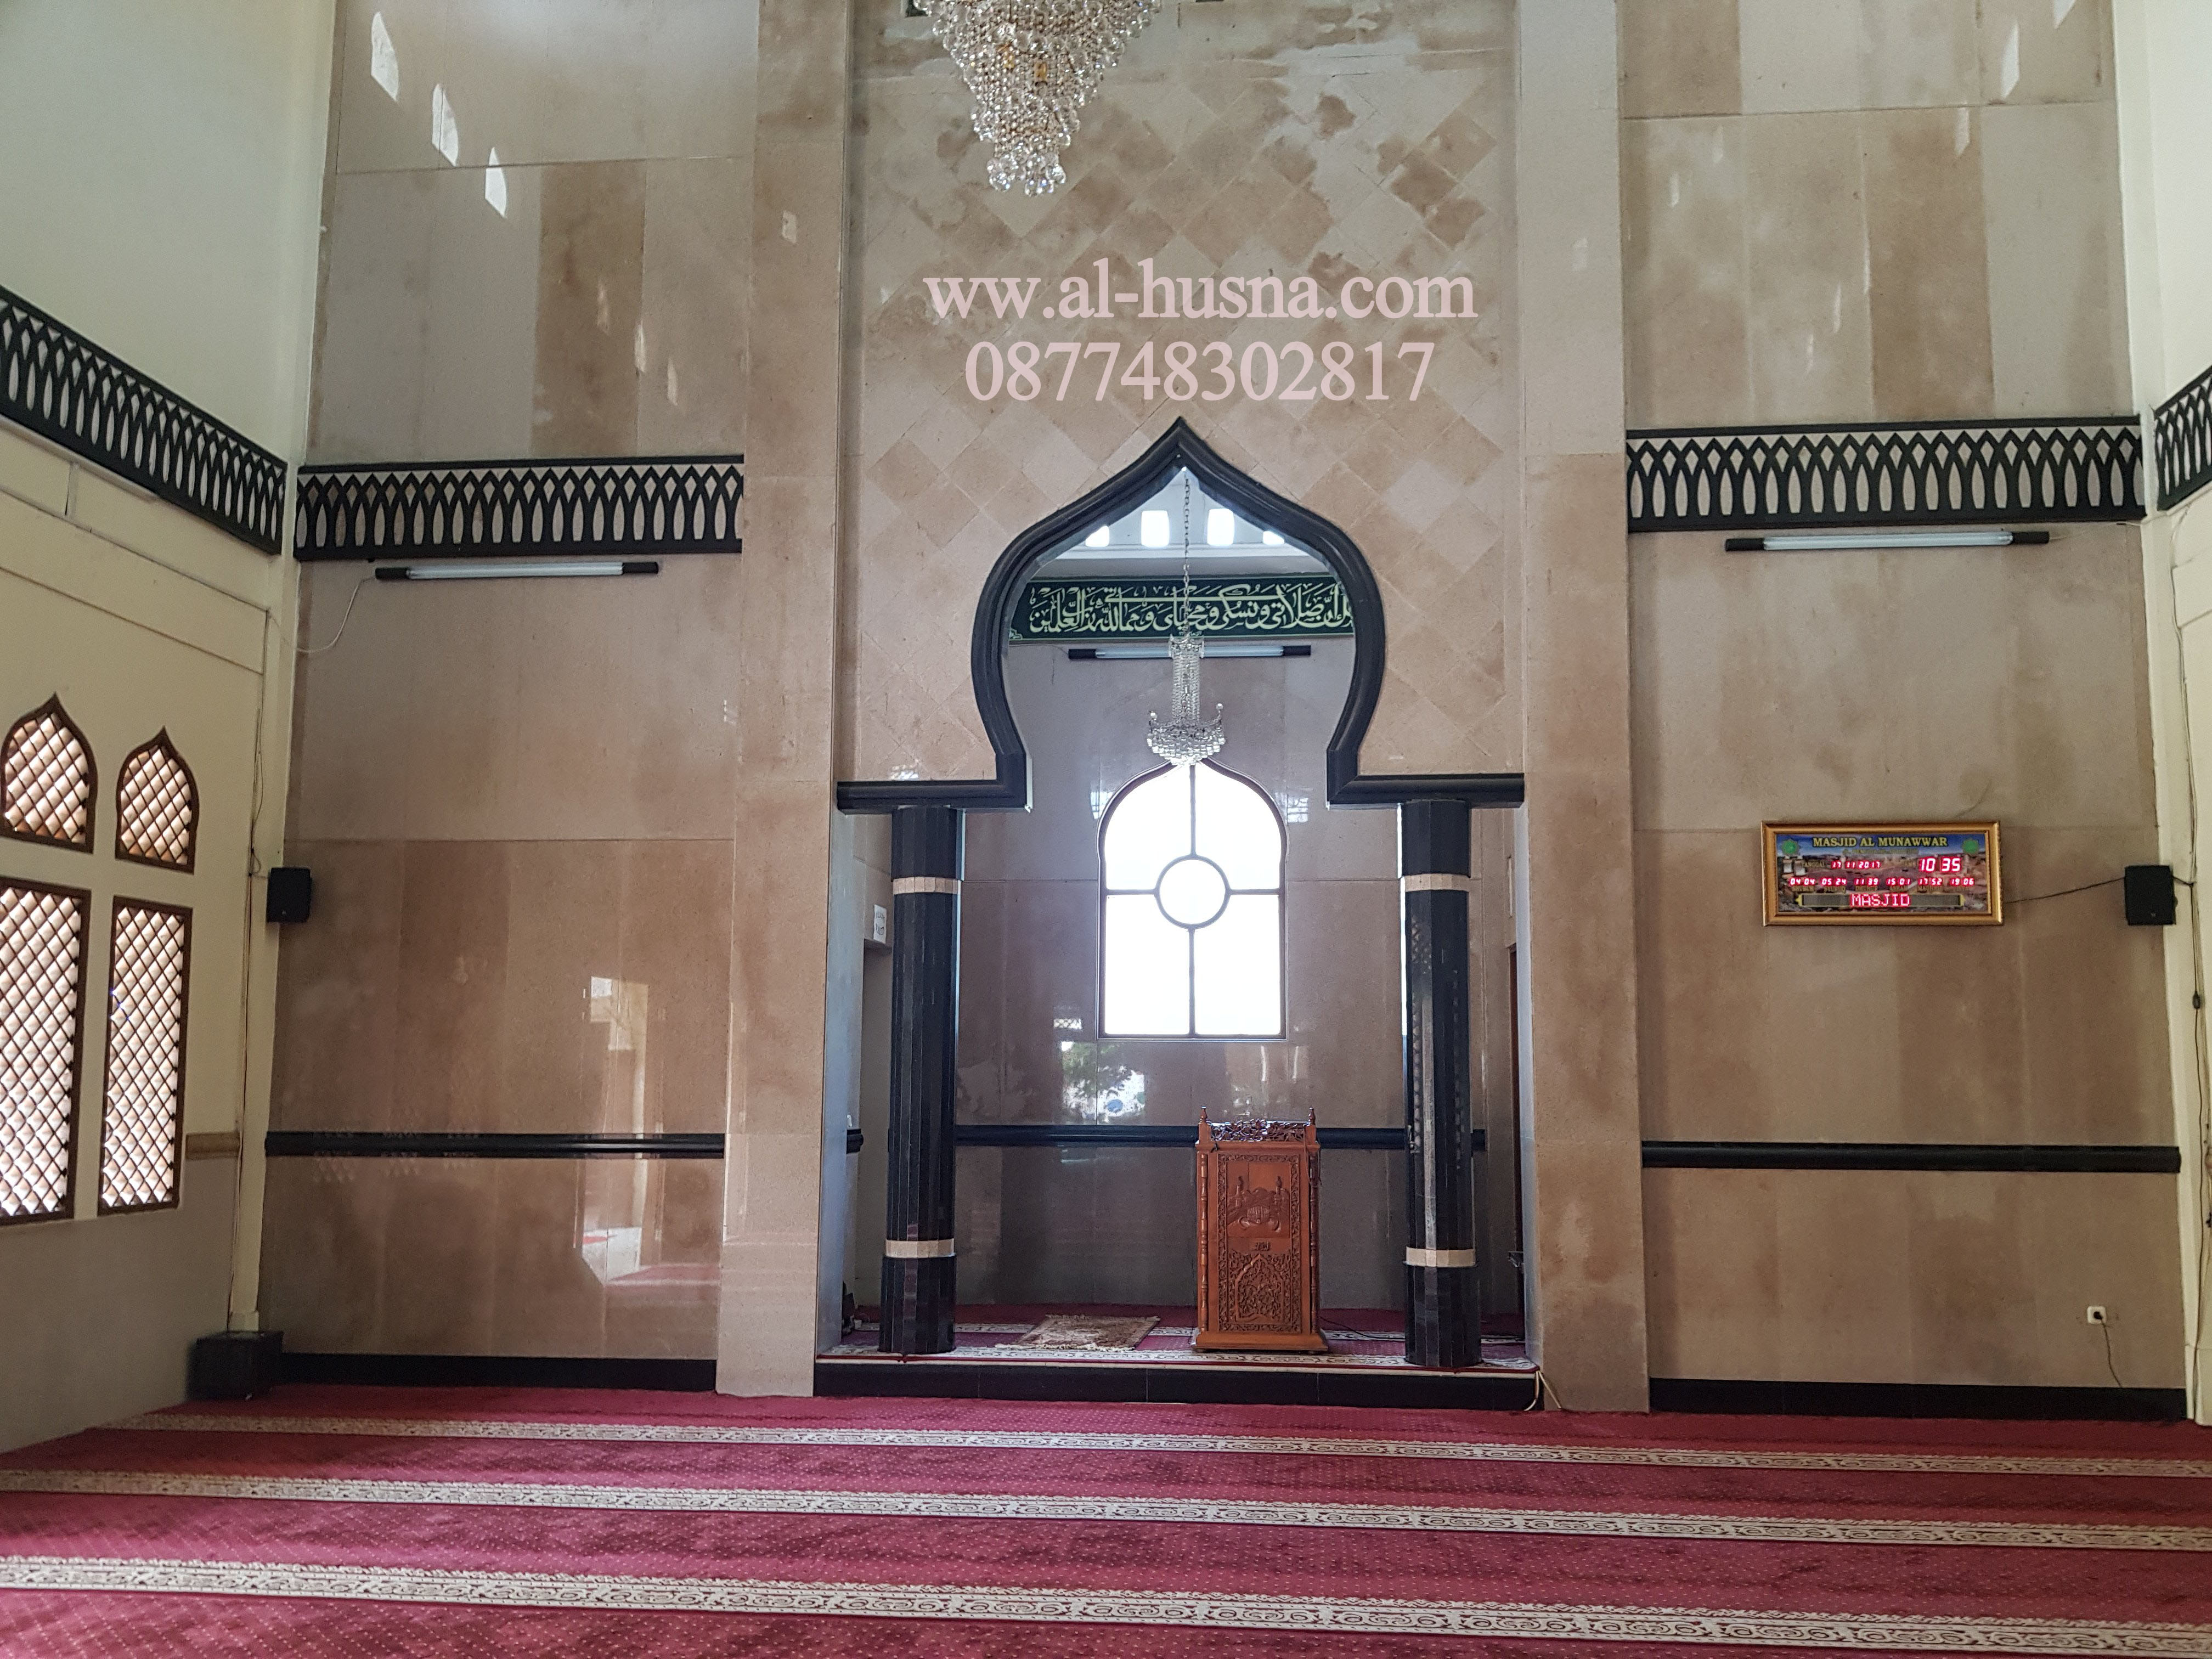 Daftar Harga Karpet Masjid Di Lenggahsari Cabangbungin